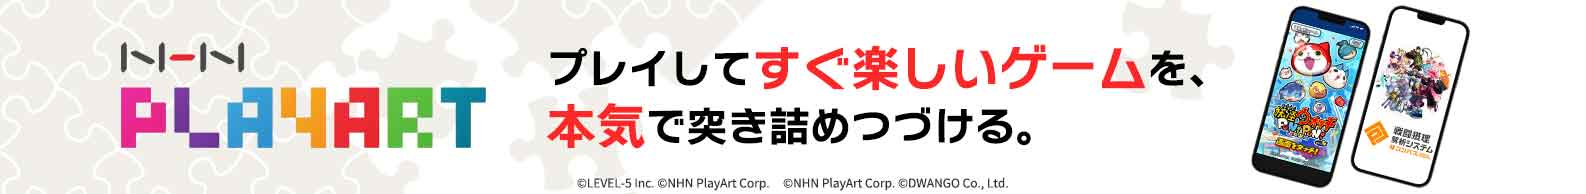 プレイしてすぐ楽しいゲームを、本気で突き詰めつづける。 - NHN PlayArt株式会社